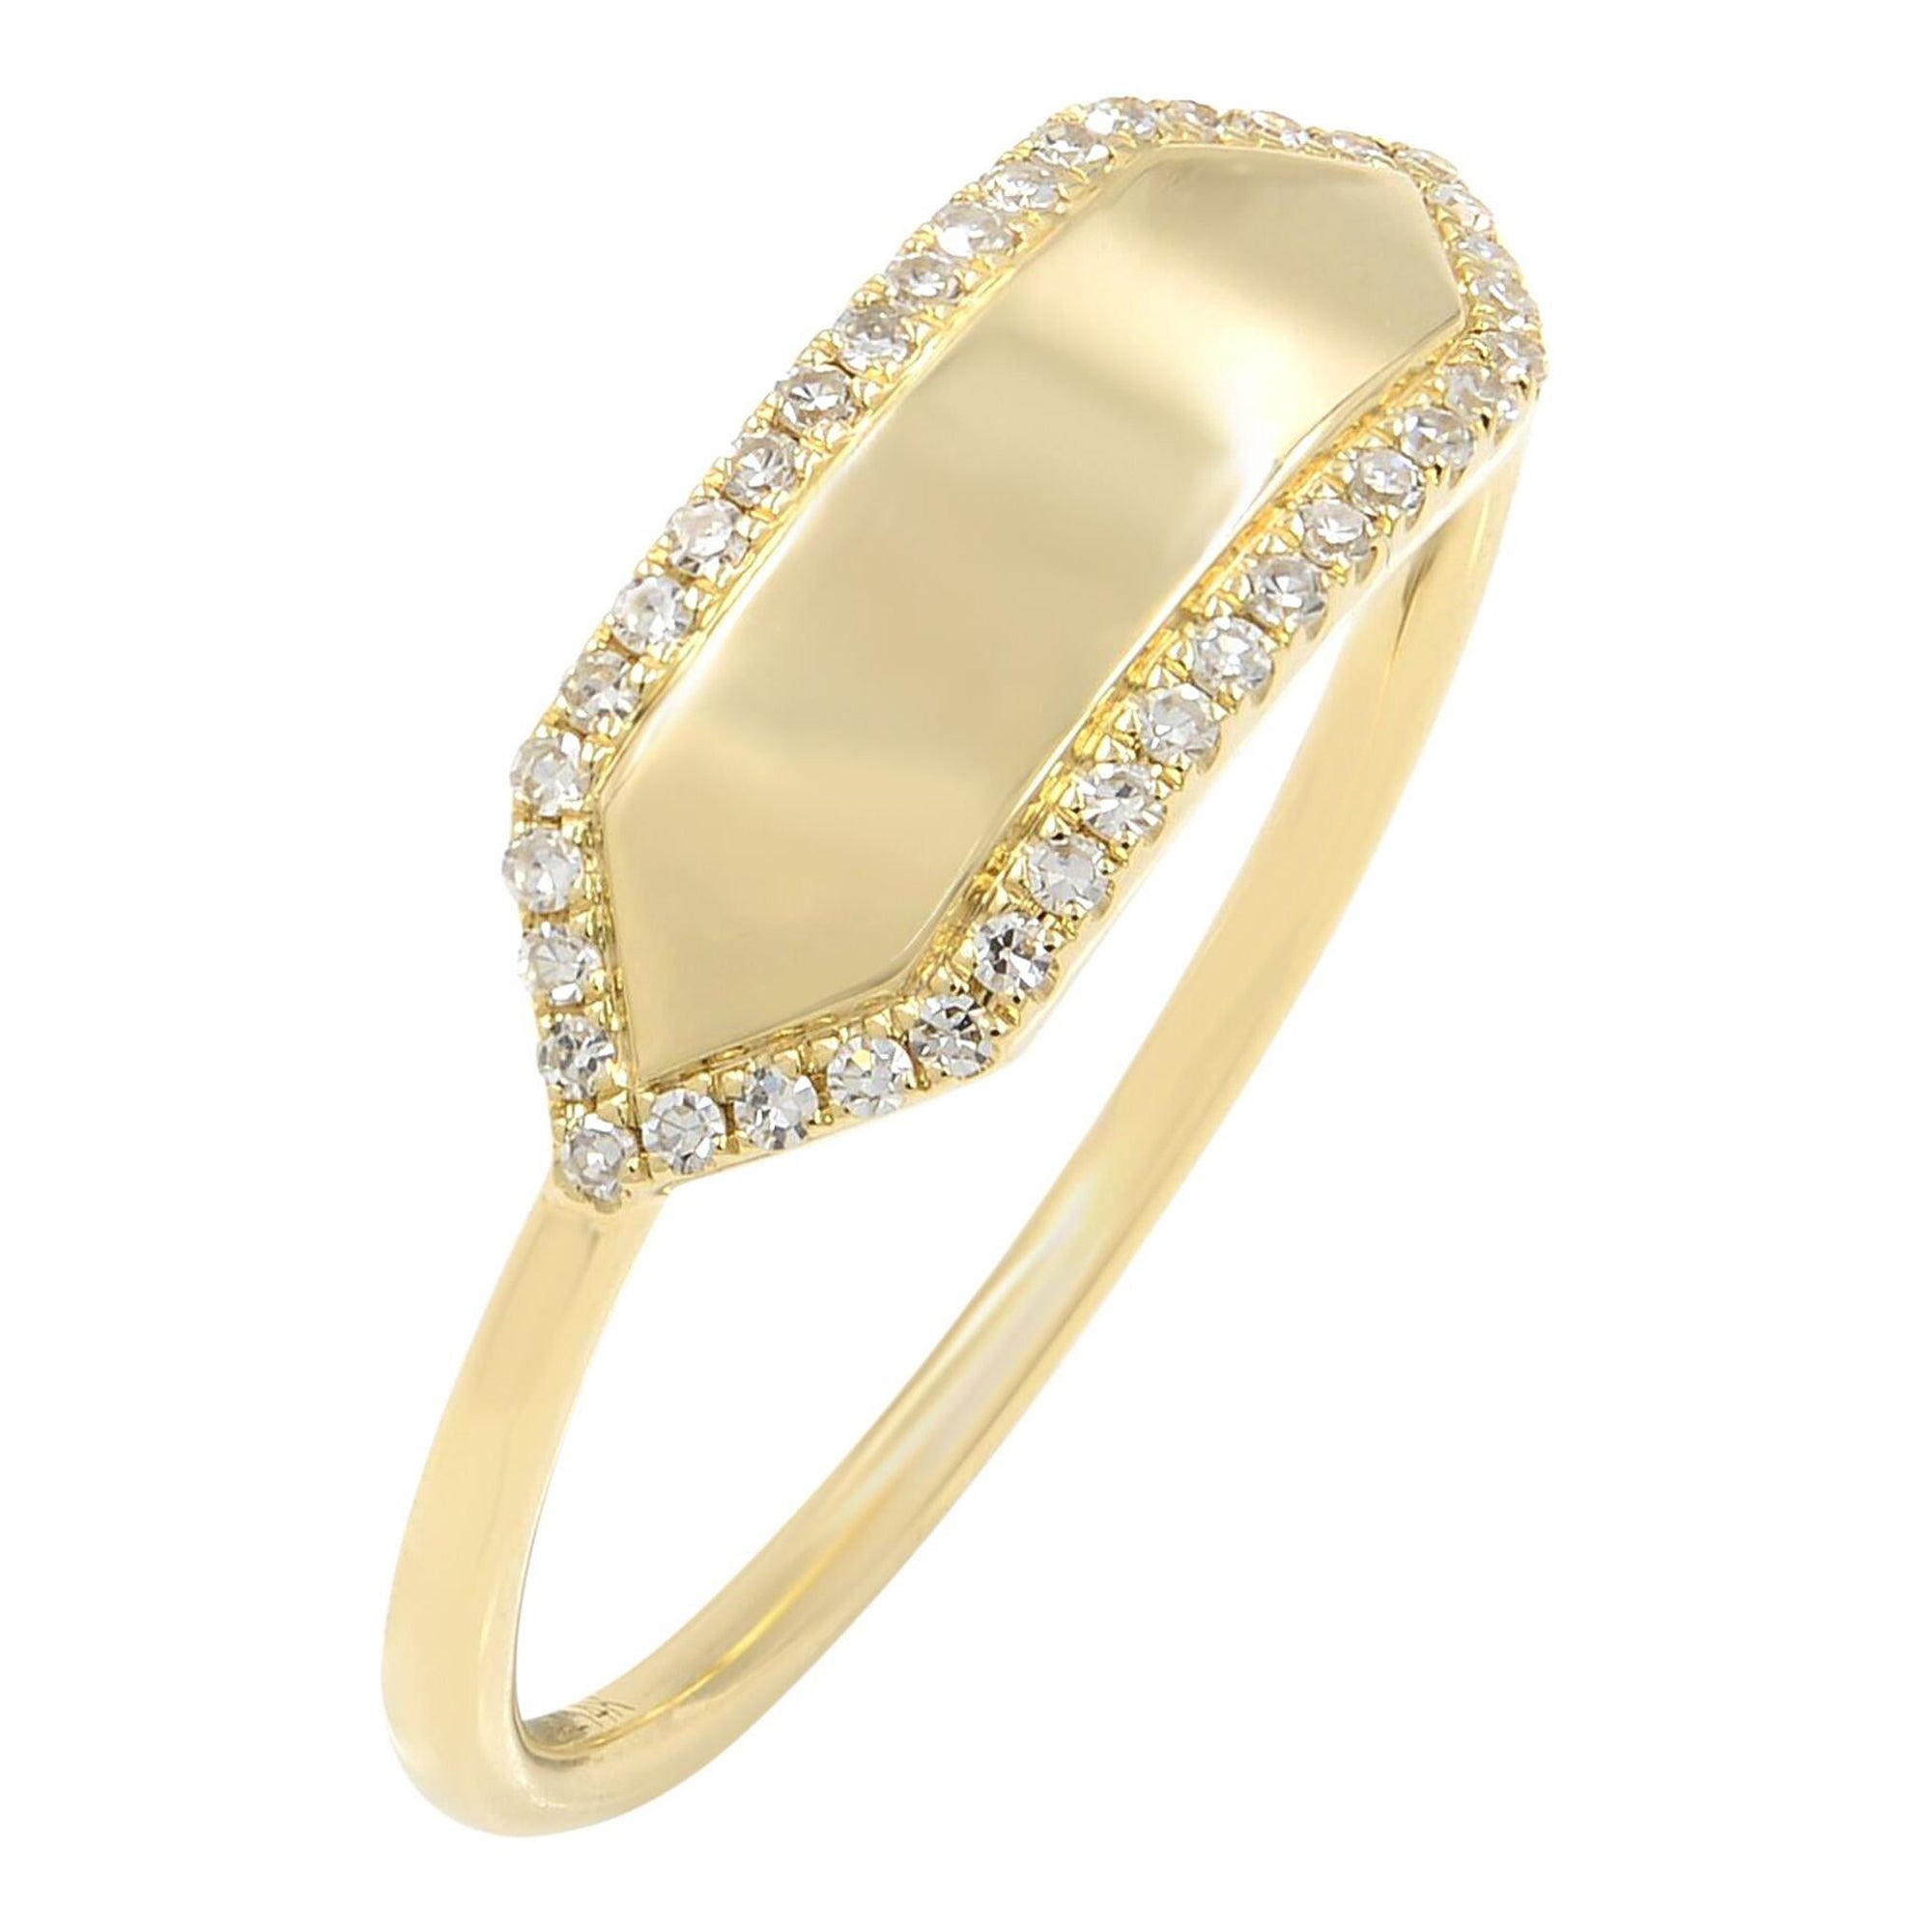 Rachel Koen Bague en or jaune 14 carats avec diamants 0,11 carat poids total